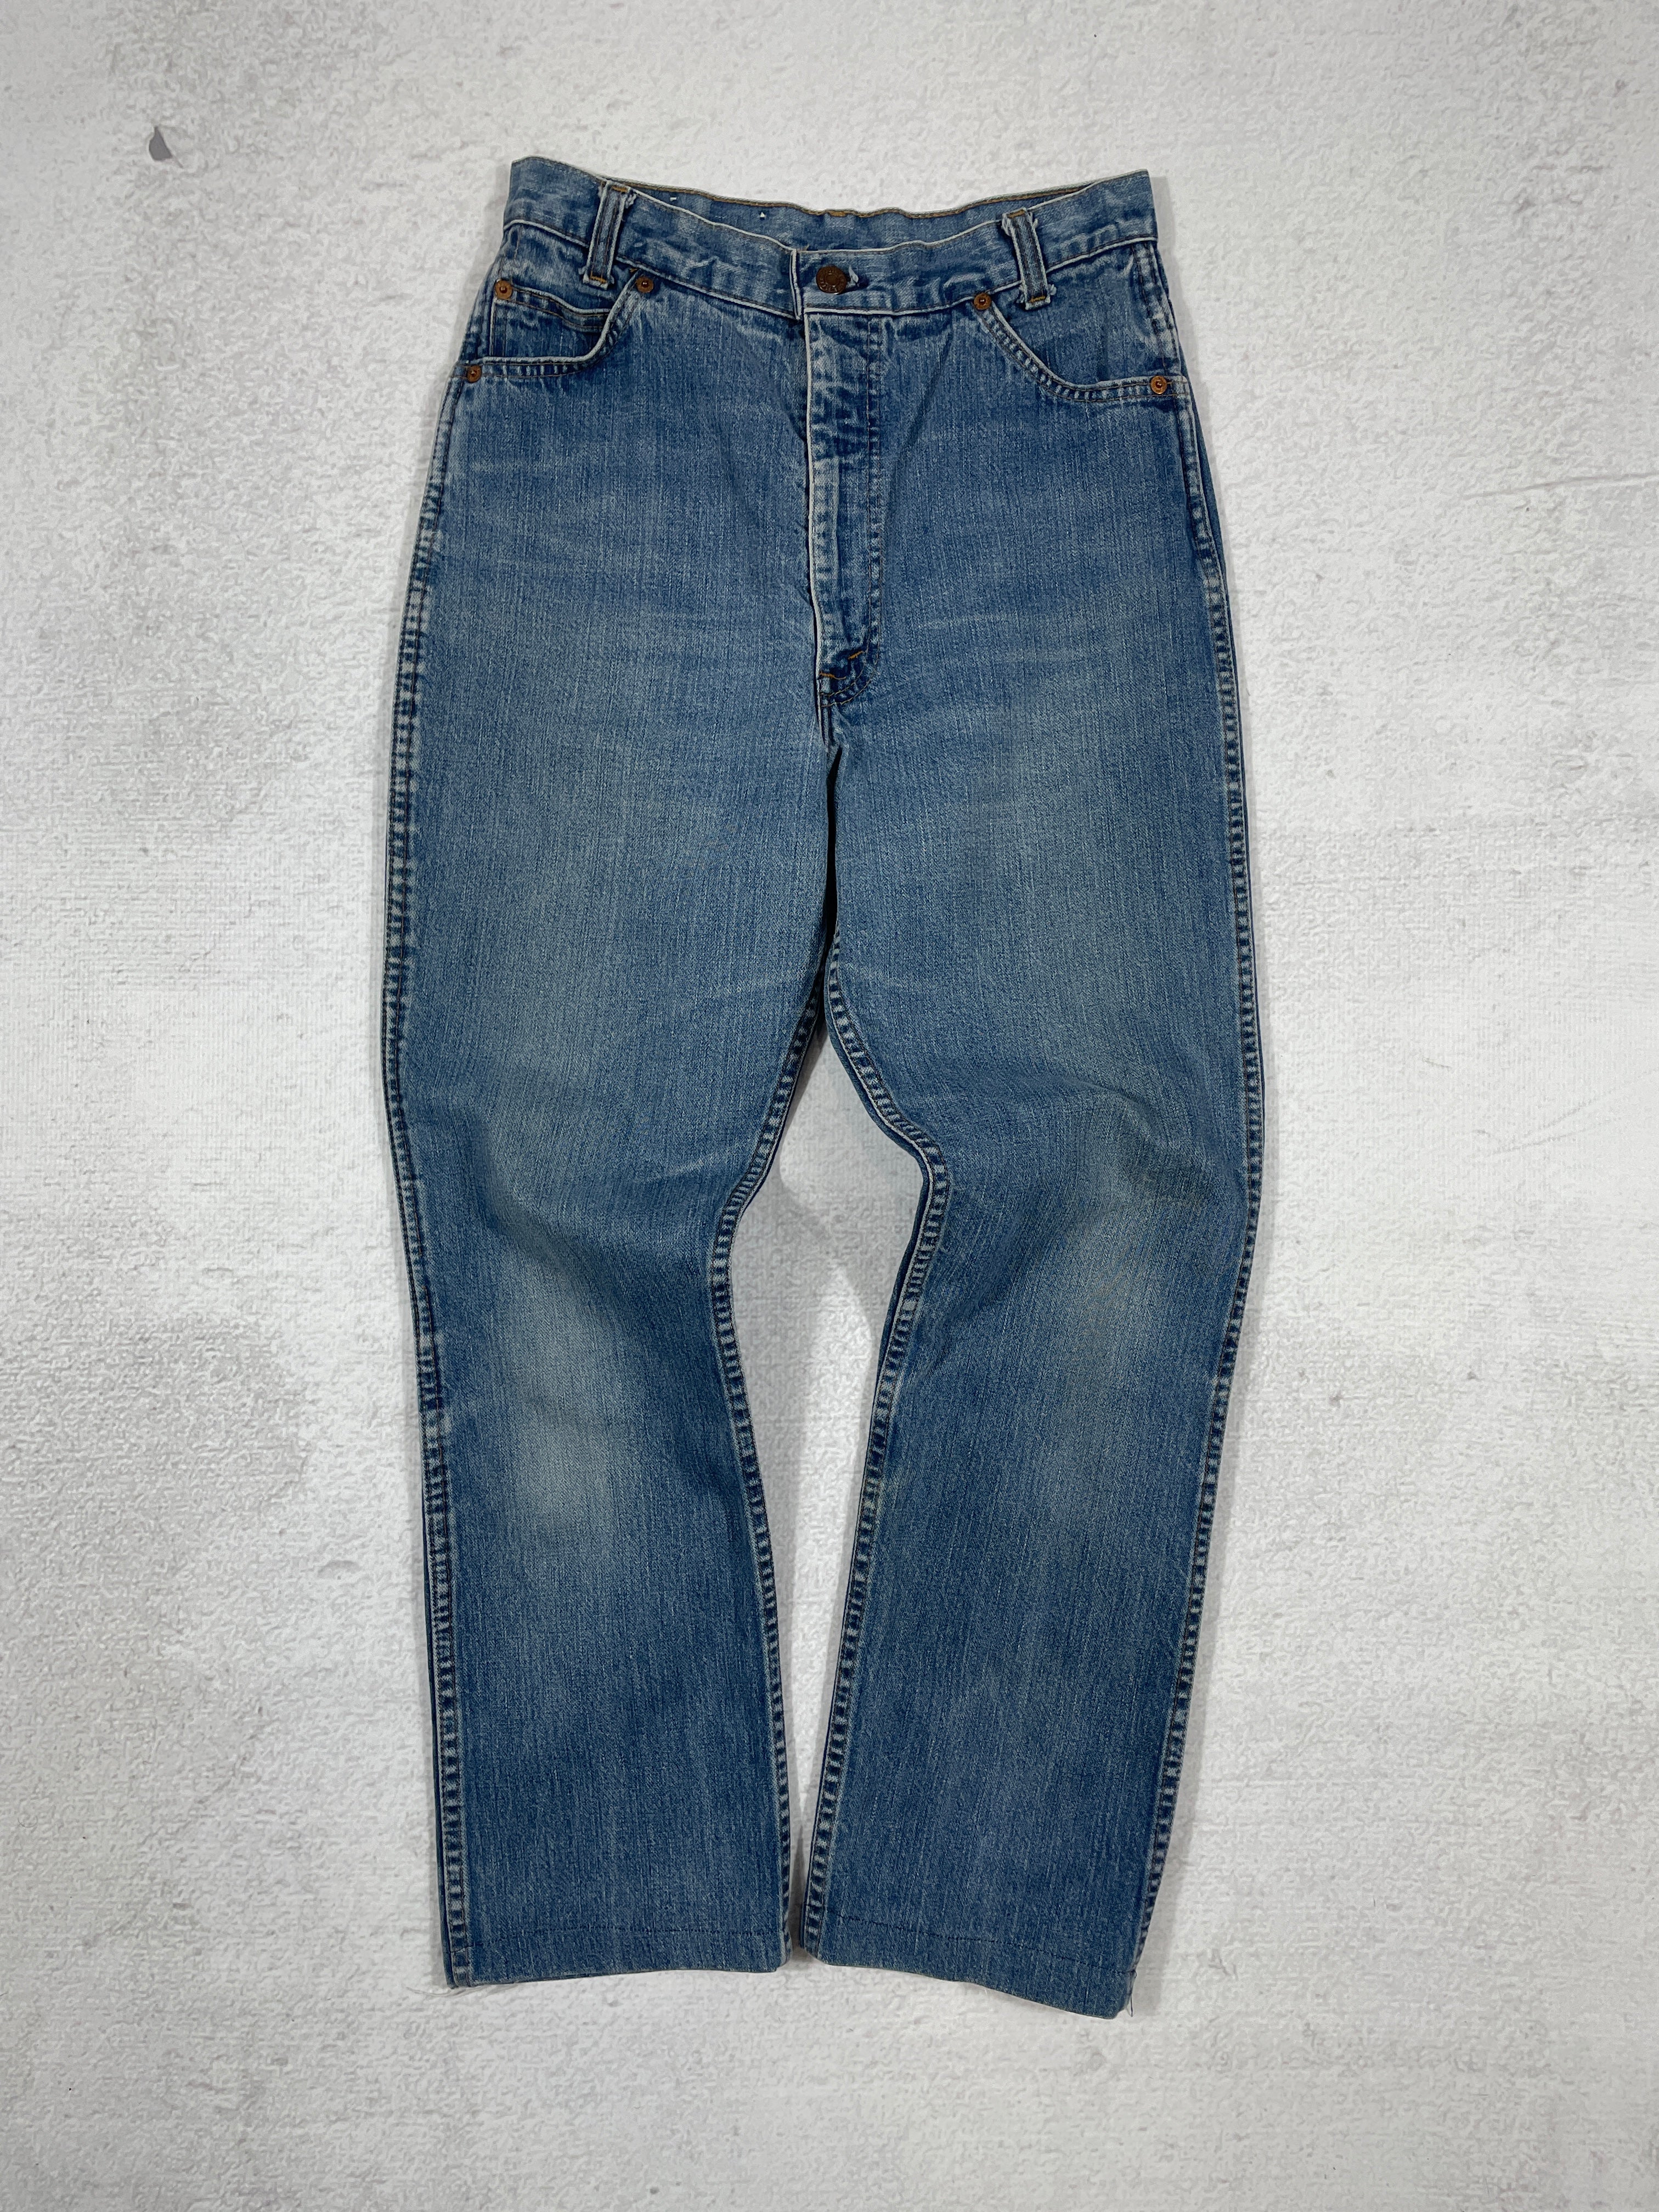 Vintage Levis Black Tab Jeans - Women's 28Wx28L